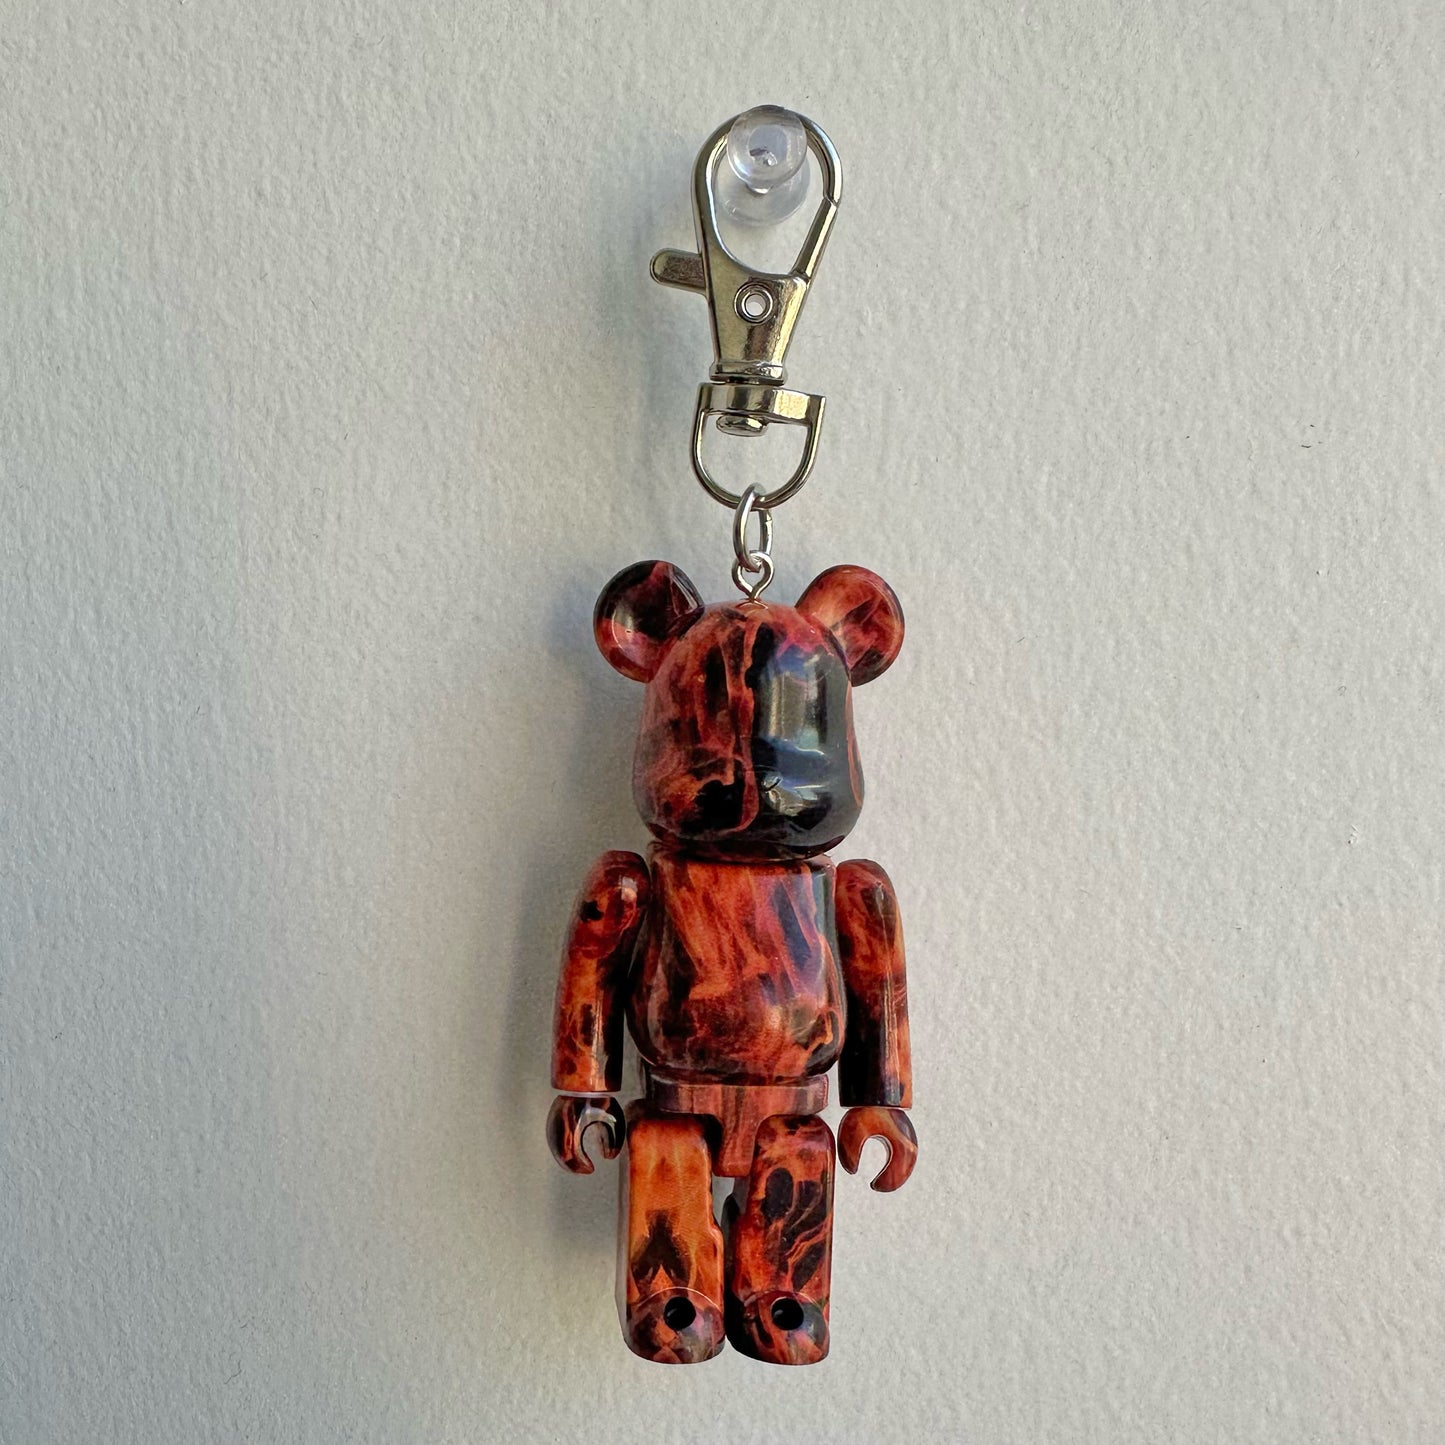 upcycled bearbrick keychains – shopseomthing